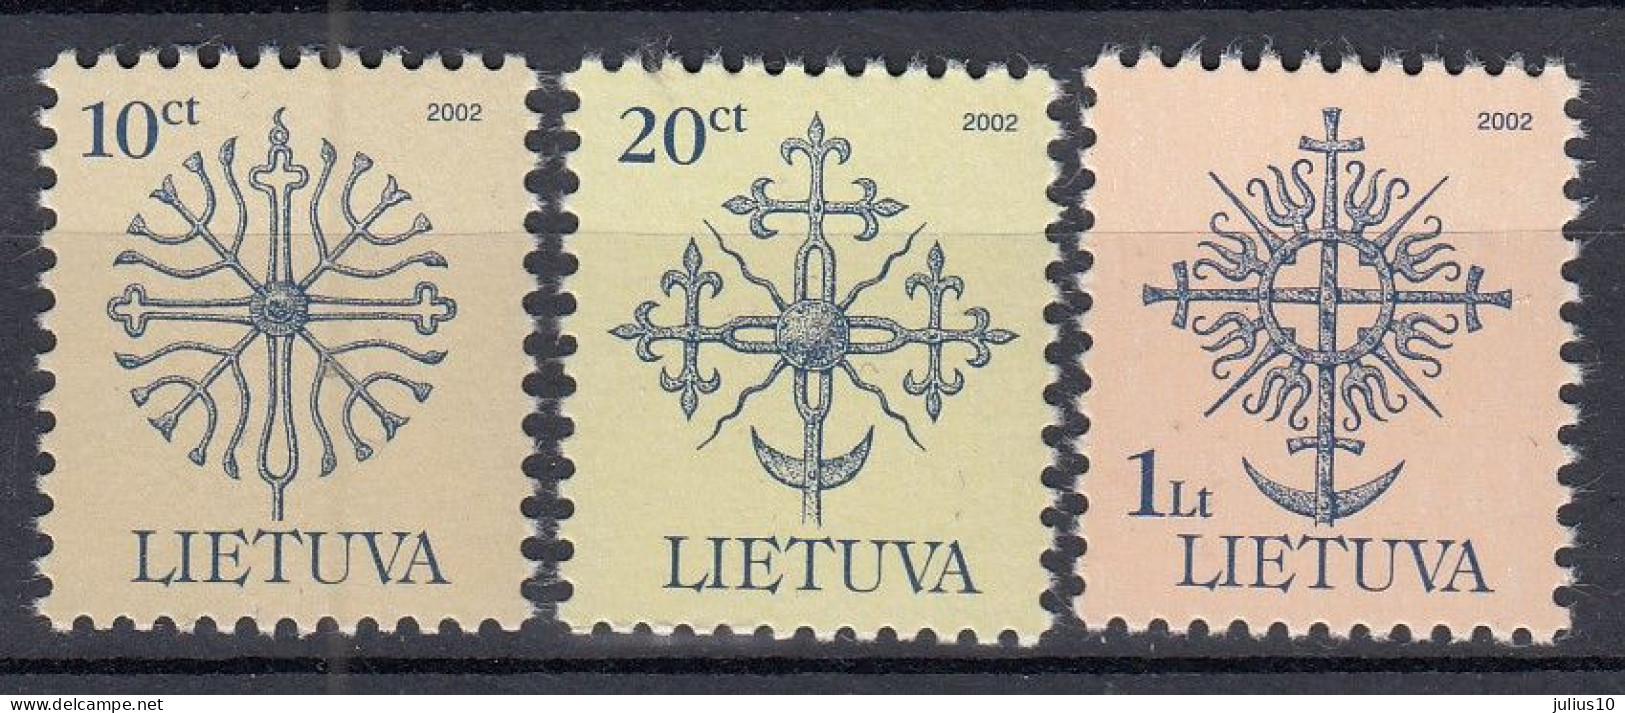 LITHUANIA 2002 Definitive MNH(**) Mi 717 CII- 719 CII #Lt1032 - Lithuania